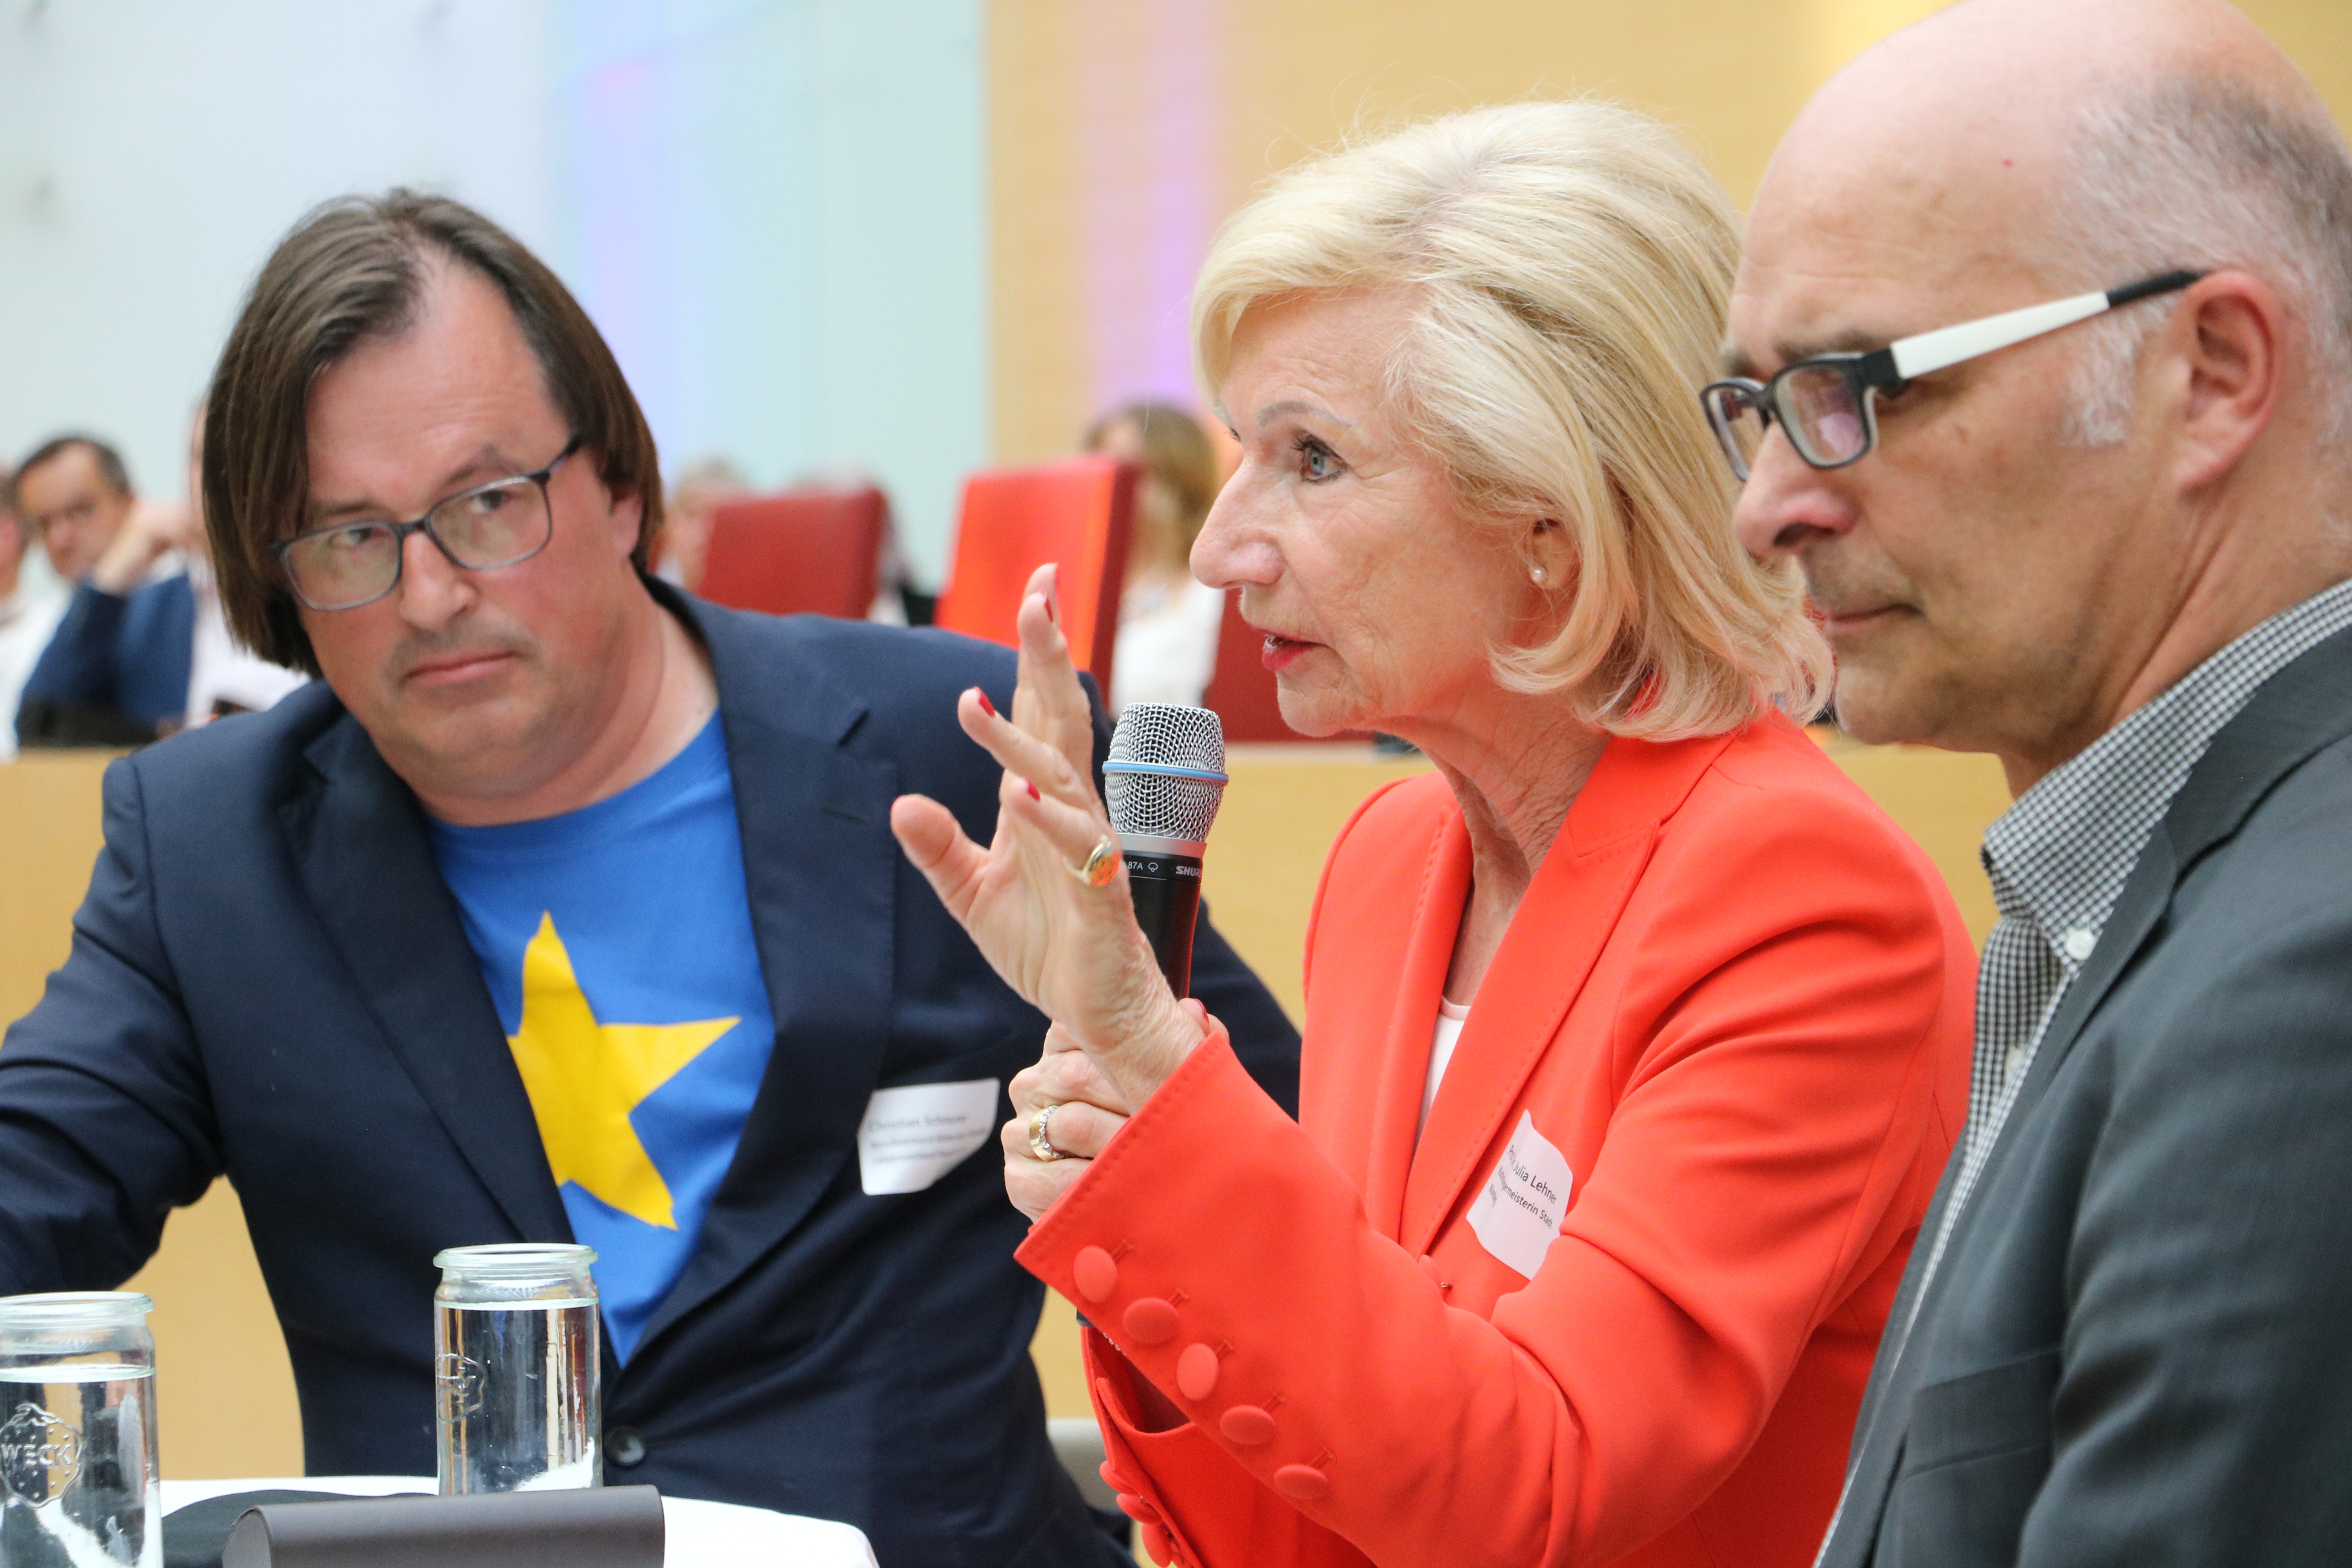 Das Panel thematisierte die aktuelle Lage der Kunstfreiheit in Bayern. Foto: CSU-Fraktion